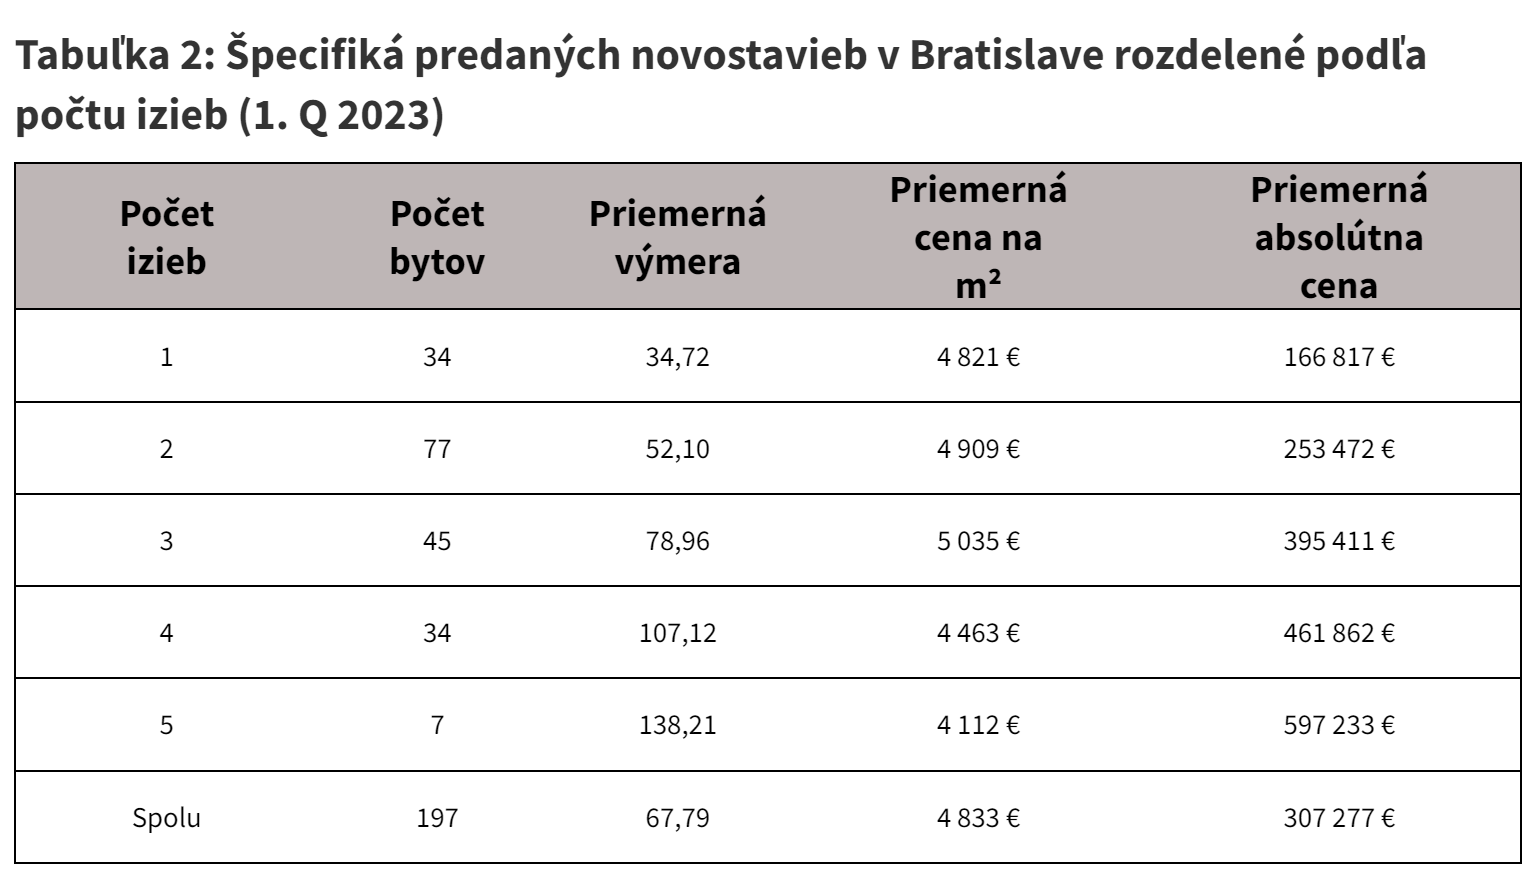 Tabulka 2 Specifika predanych novostavieb v Bratislave rozdelene podla poctu izieb 1. Q 2023